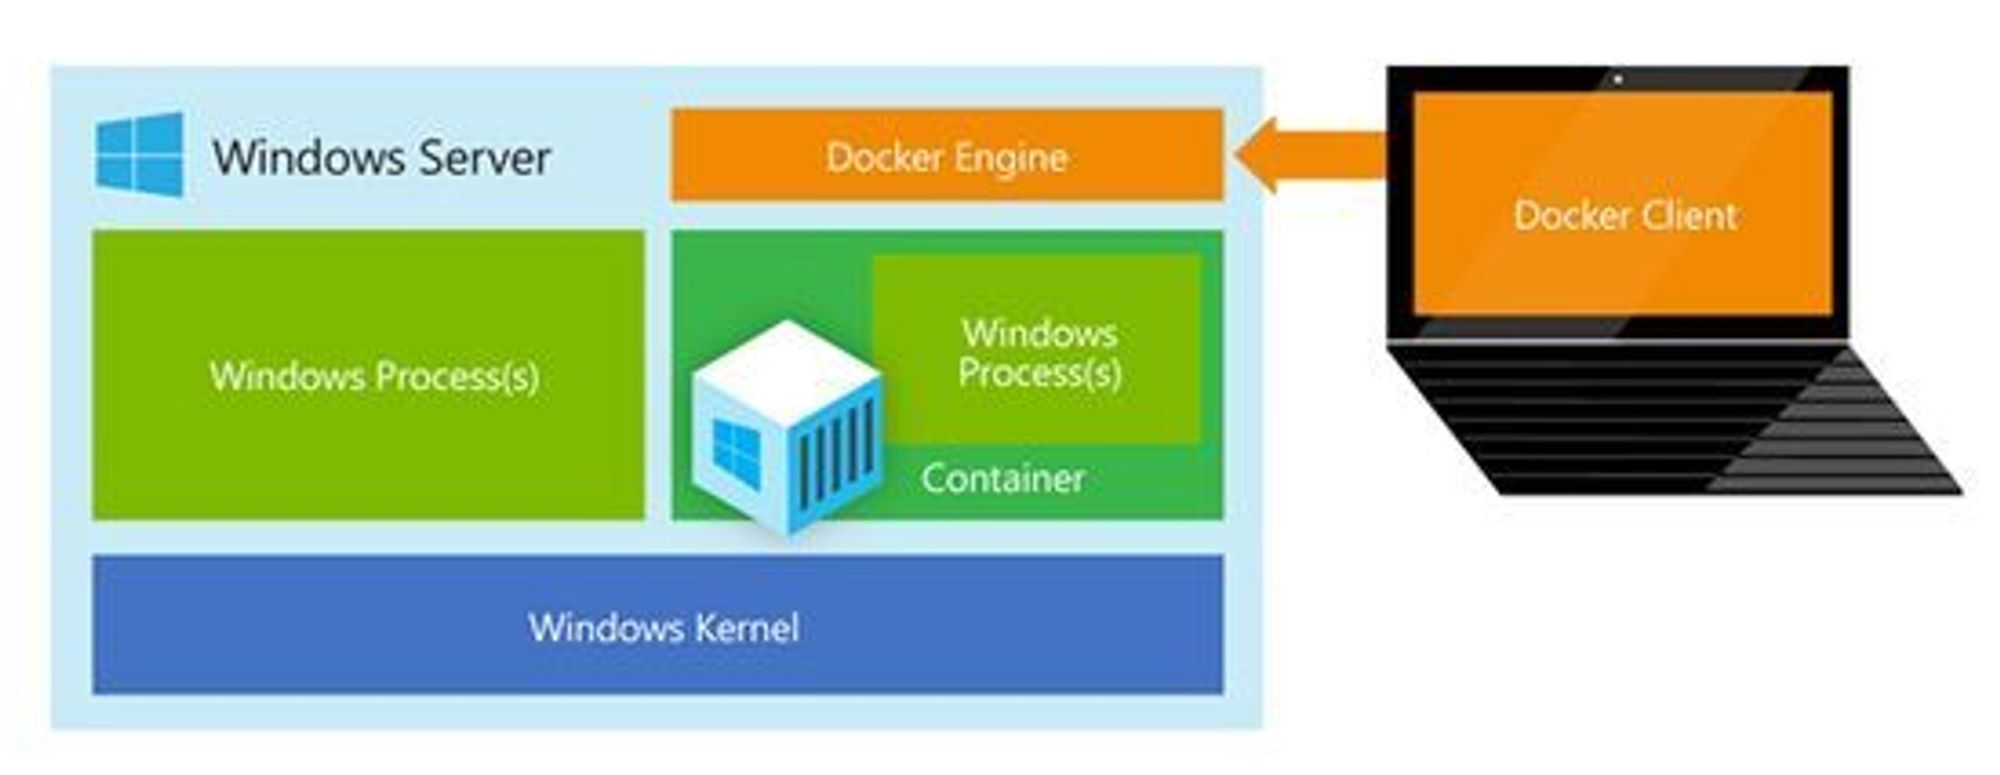 Komponentene i en Windows Server-konteiner som kjøres i Docker.